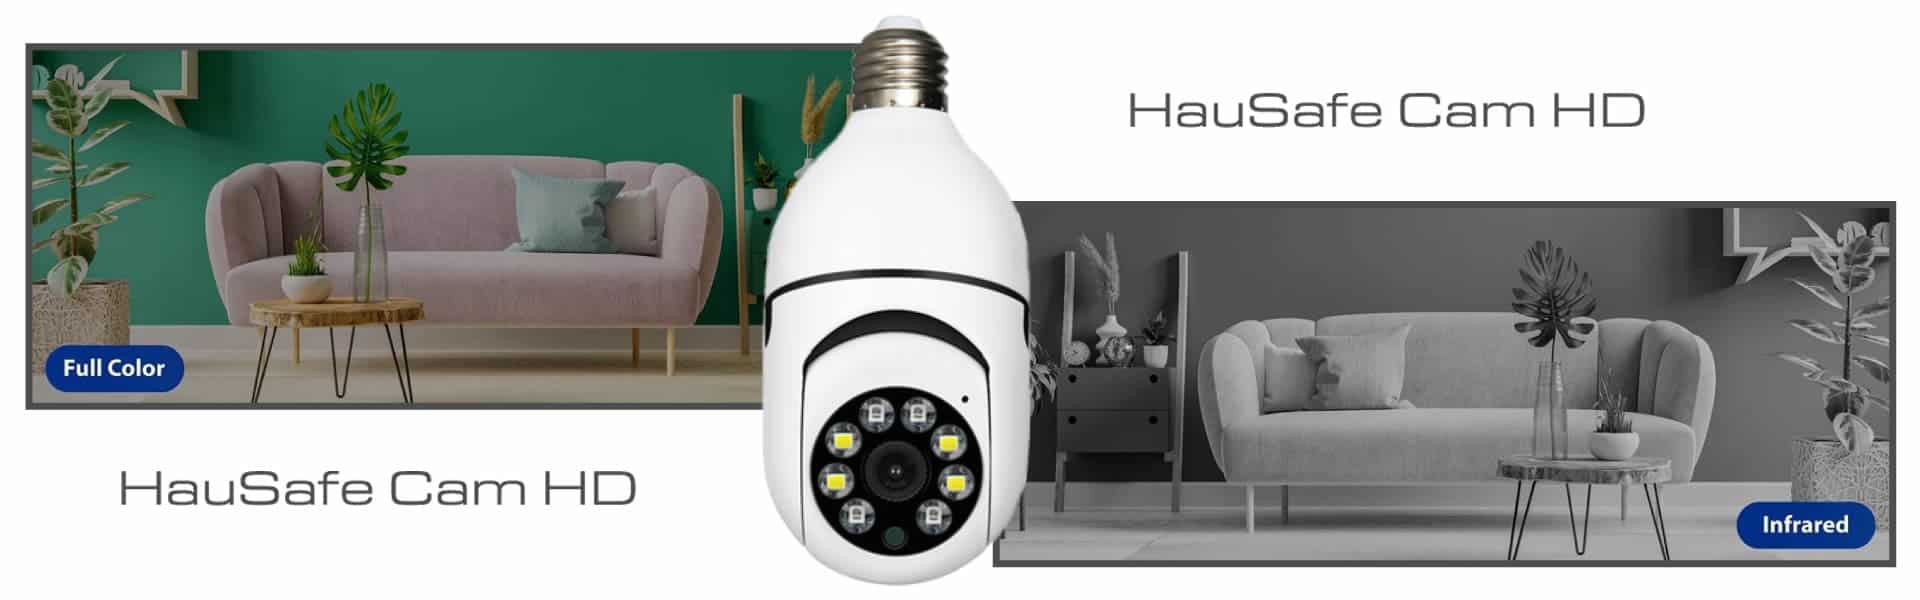 HauSafe Cam HD, reseña y opiniones